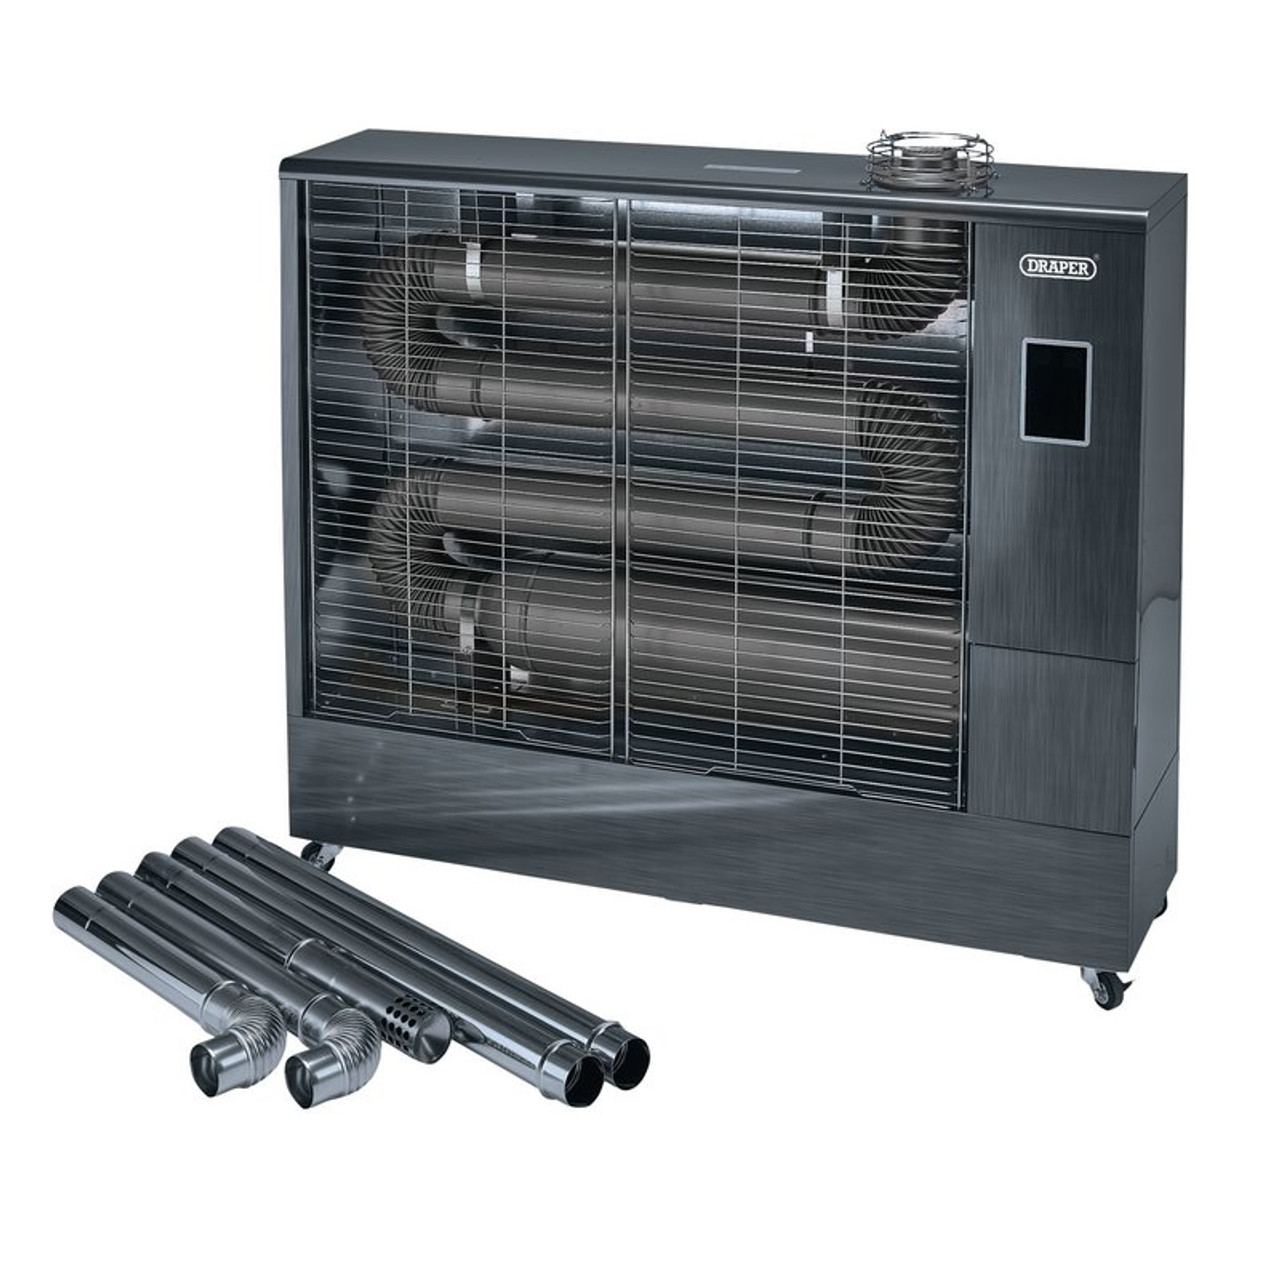 Draper 230V Far Infrared Diesel Heater with Flue Kit, 67,500 BTU